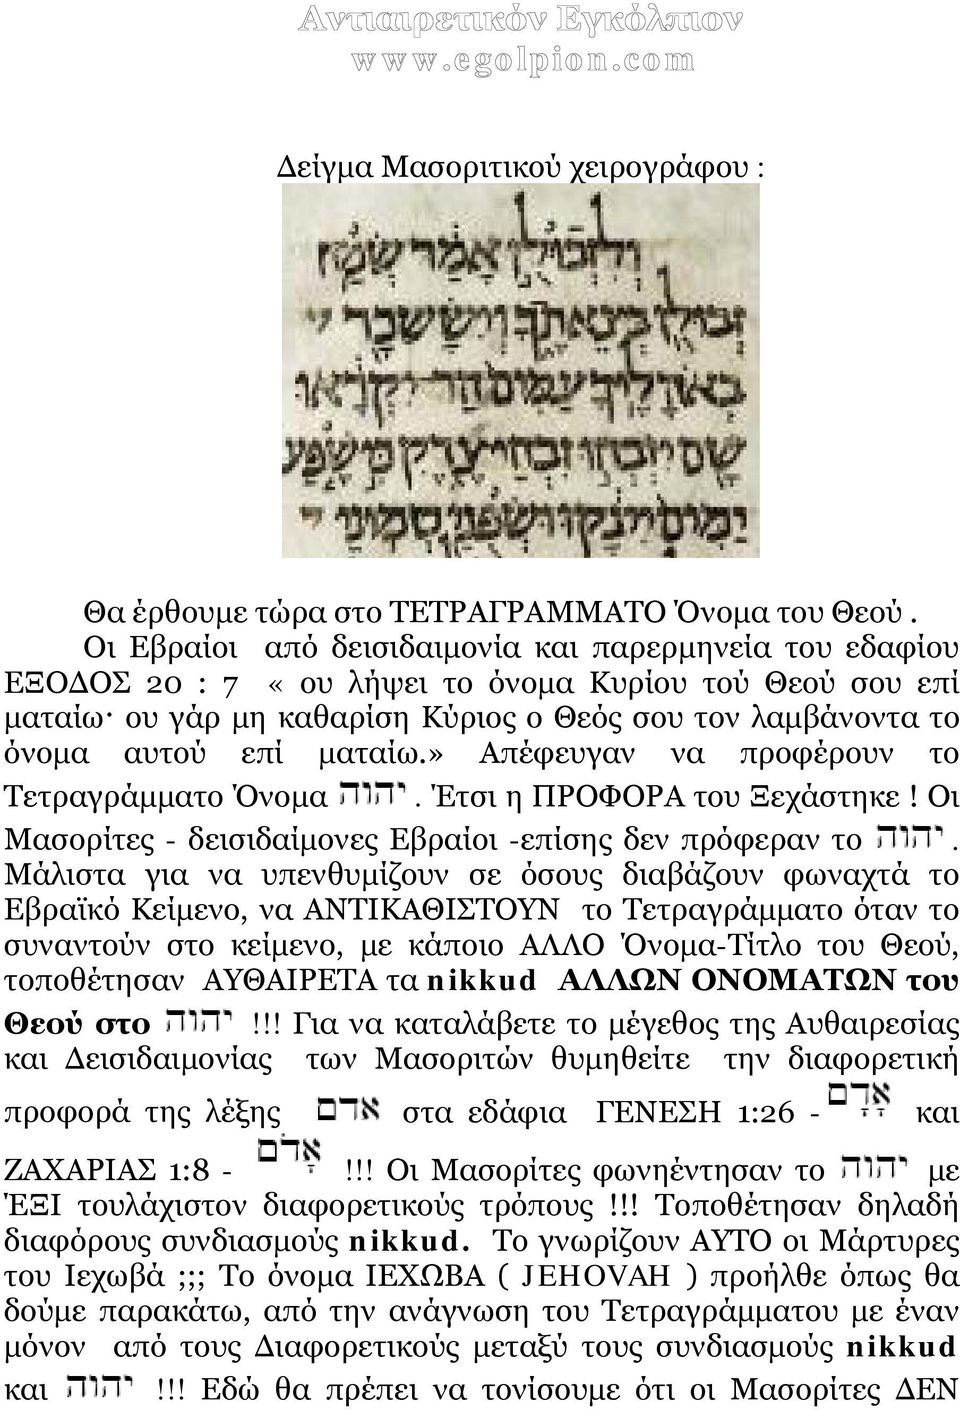 » Απέφευγαν να προφέρουν το Τετραγράμματο Όνομα. Έτσι η ΠΡΟΦΟΡΑ του Ξεχάστηκε! Οι Μασορίτες - δεισιδαίμονες Εβραίοι -επίσης δεν πρόφεραν το.